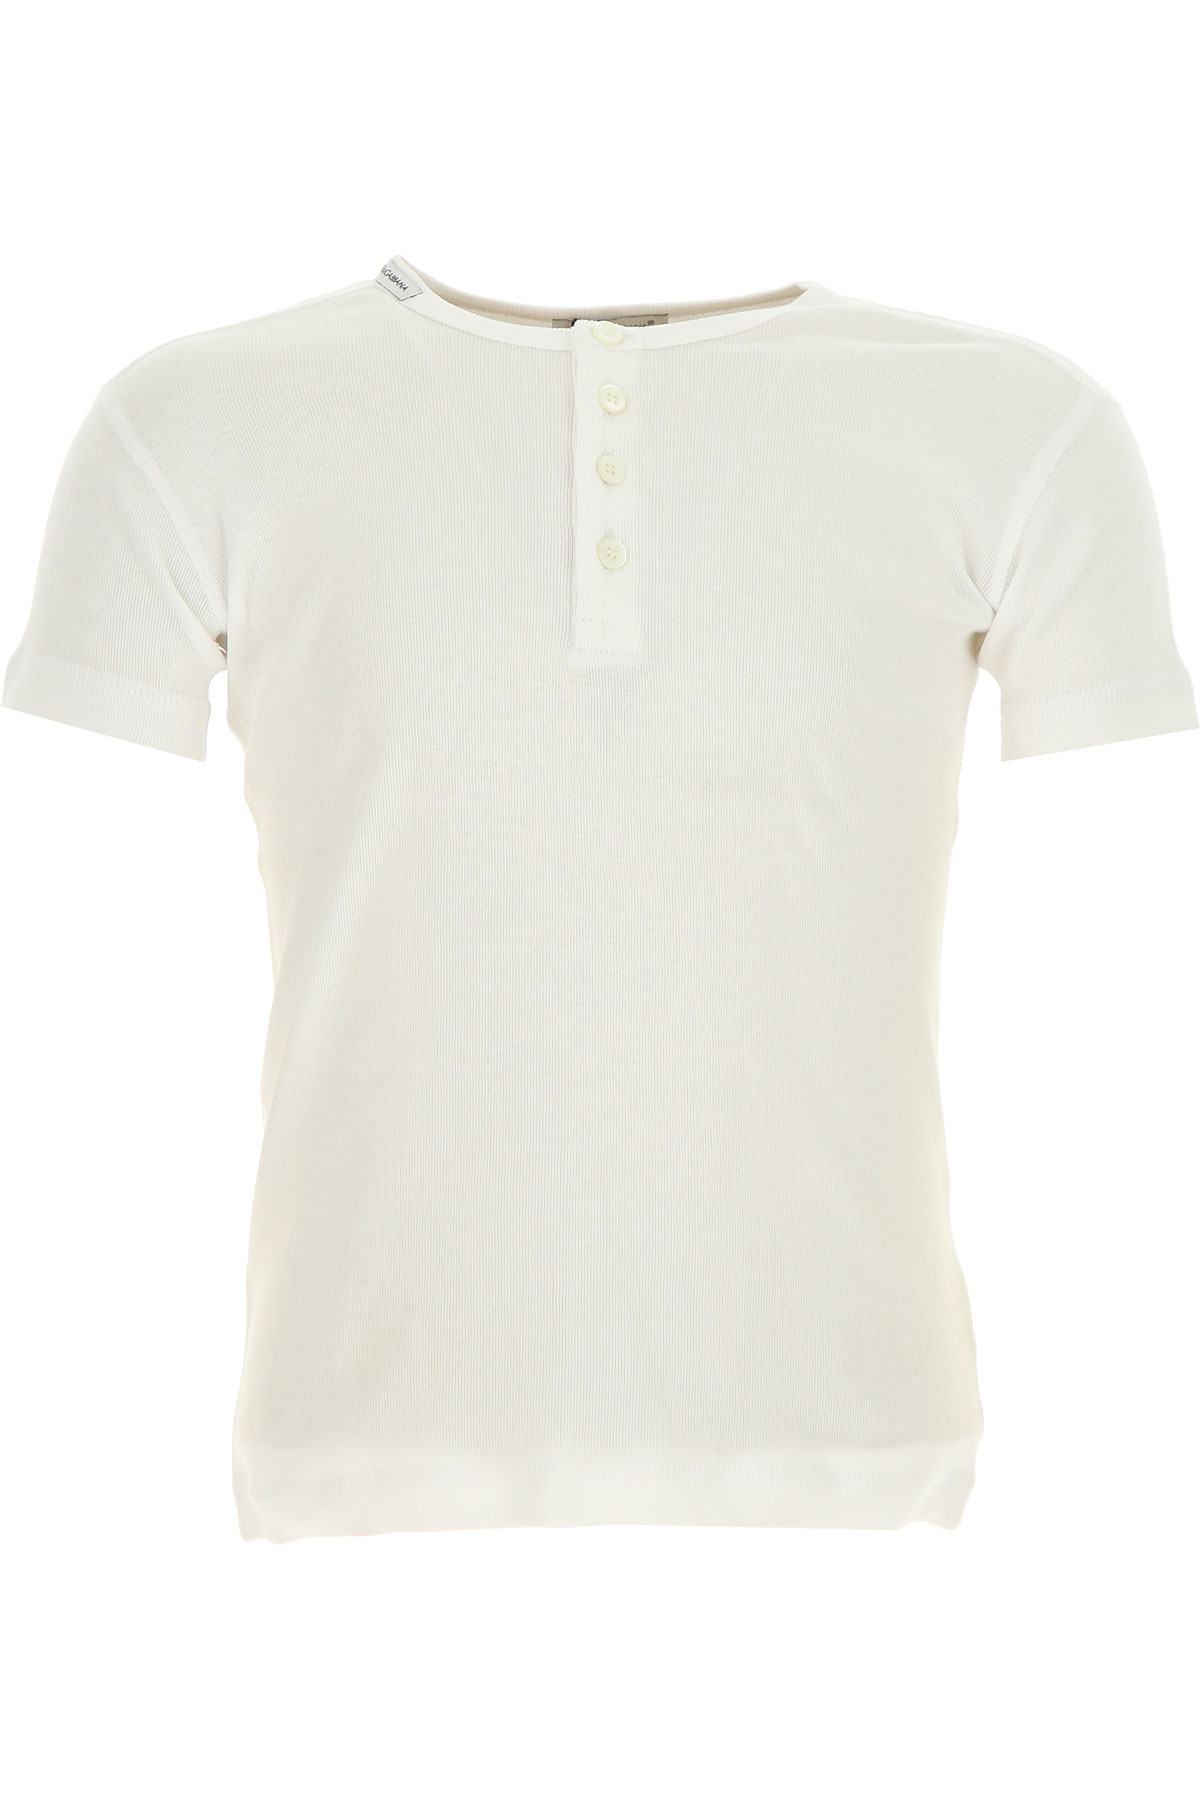 Dolce & Gabbana T-Shirt Enfant pour Fille Outlet, Blanc, Coton, 2017, 4Y 5Y 8Y